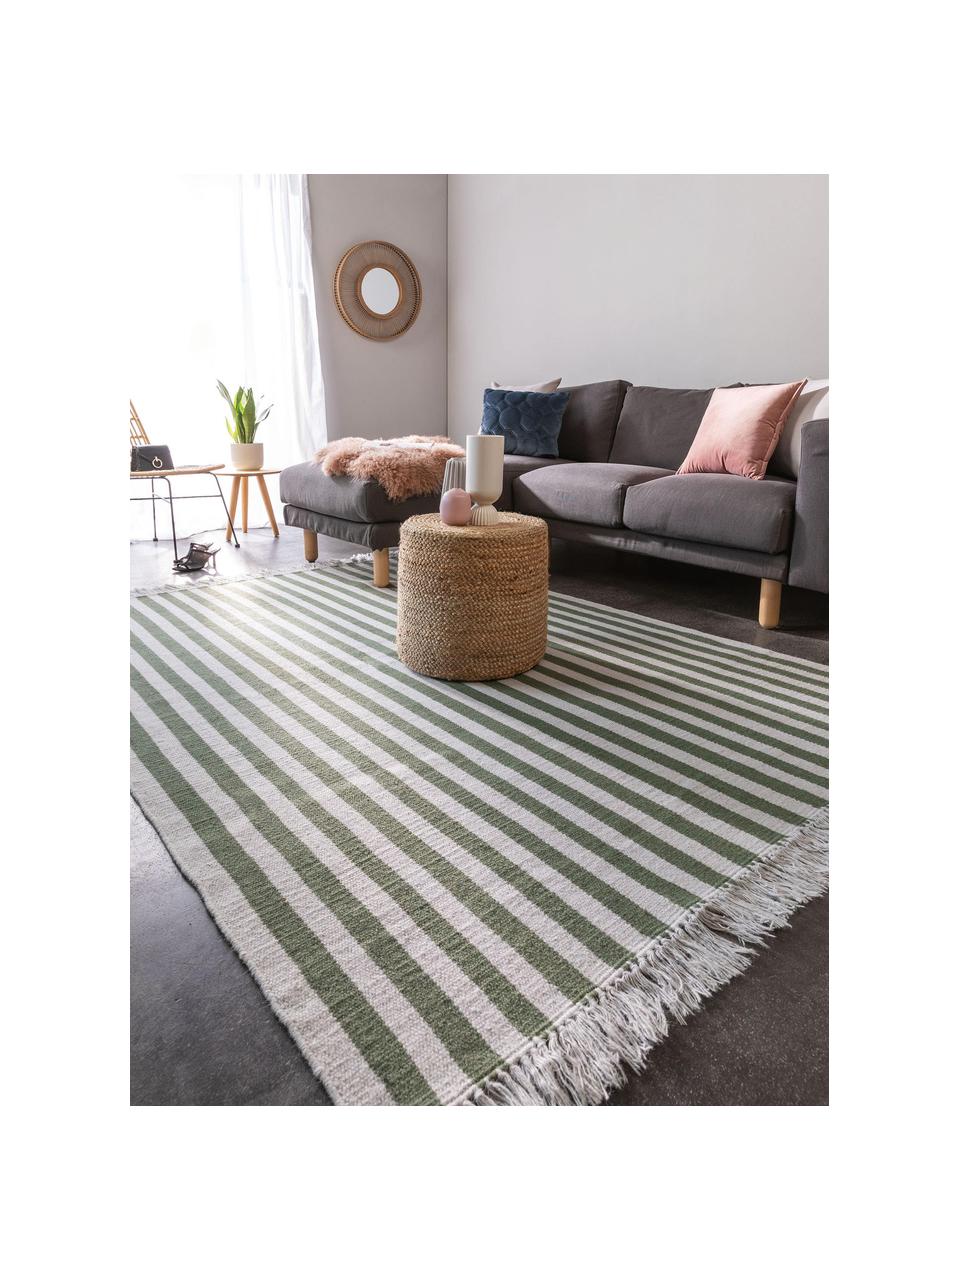 Pruhovaný vlněný koberec s třásněmi Gitta, Zelená, světle šedá